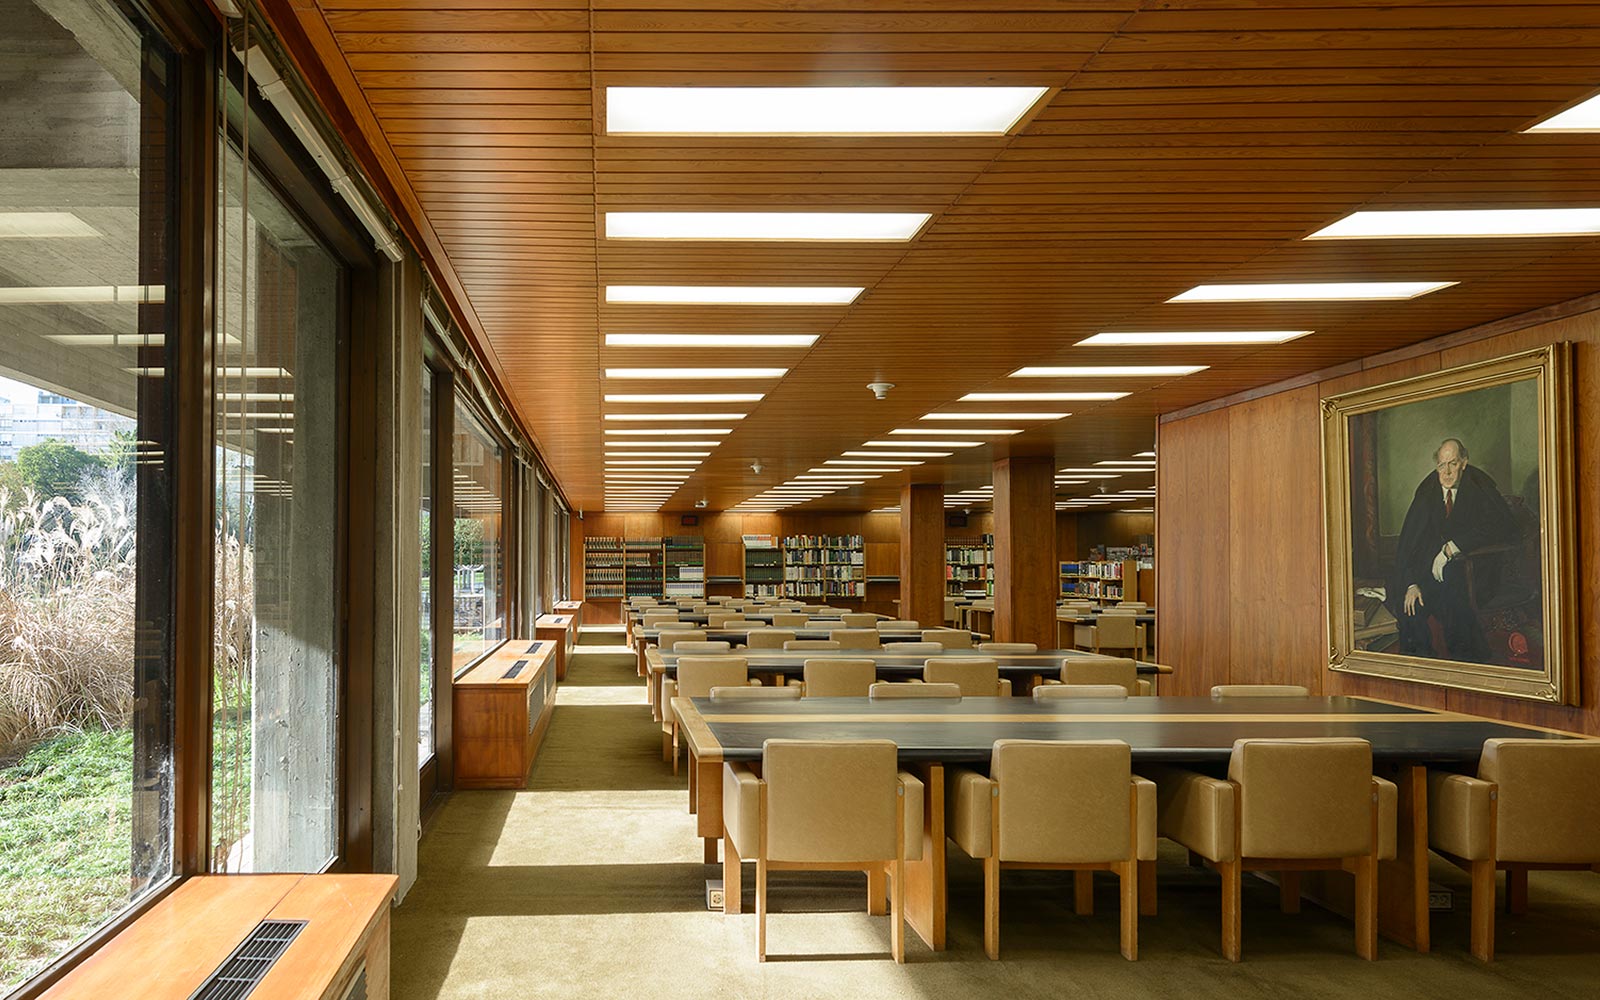 Sala de Leitura da Biblioteca de Arte, 2017. Arquivos Gulbenkian | ID: 13297 © Ricardo Oliveira Alves